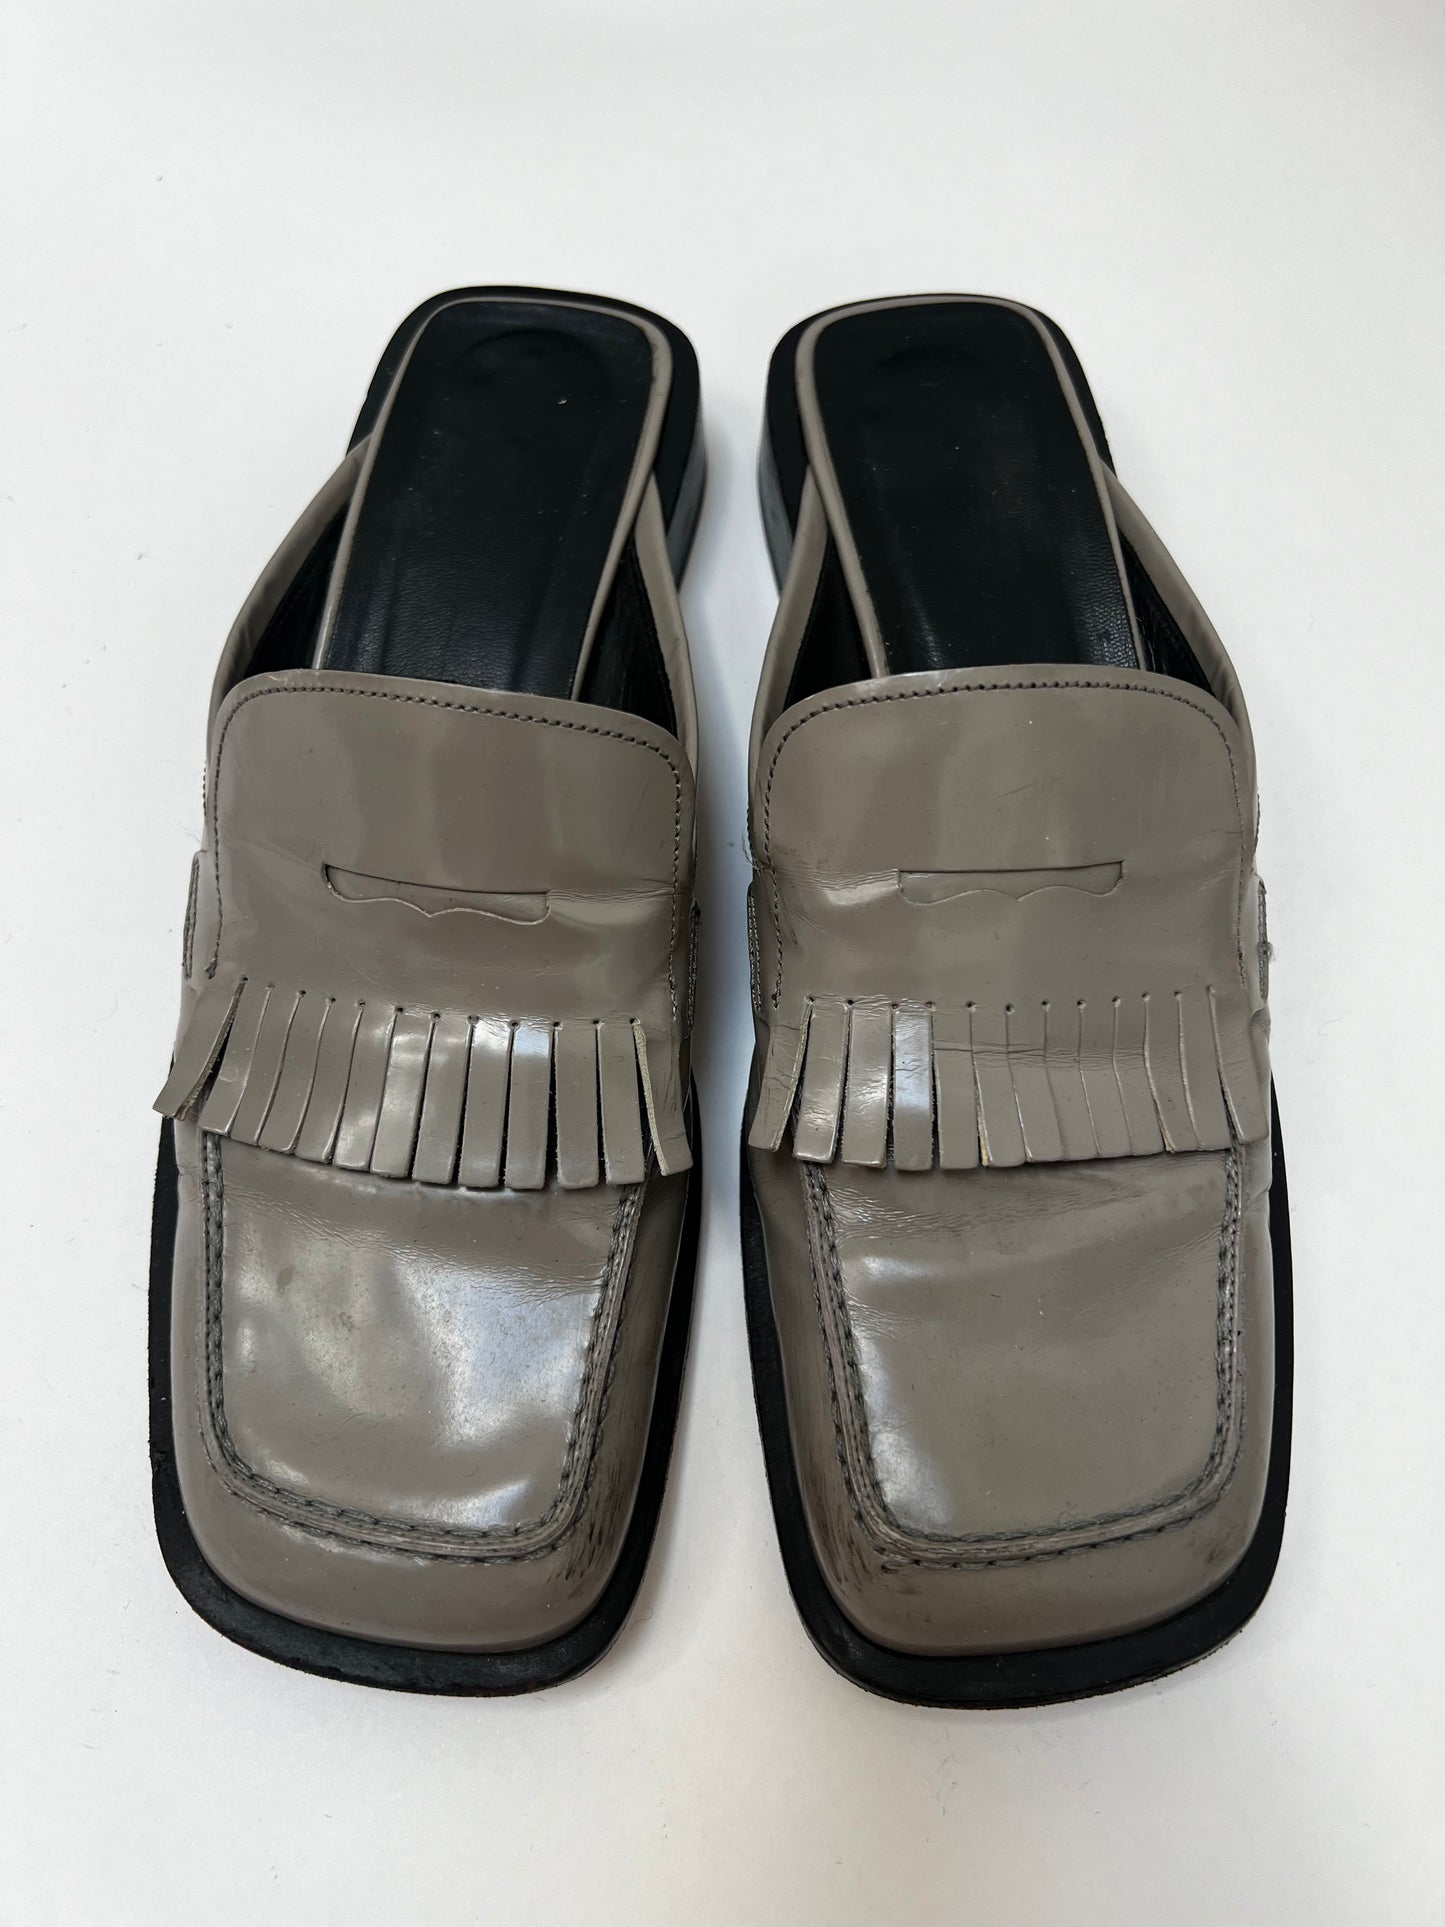 Prada SS 1999 loafer slide